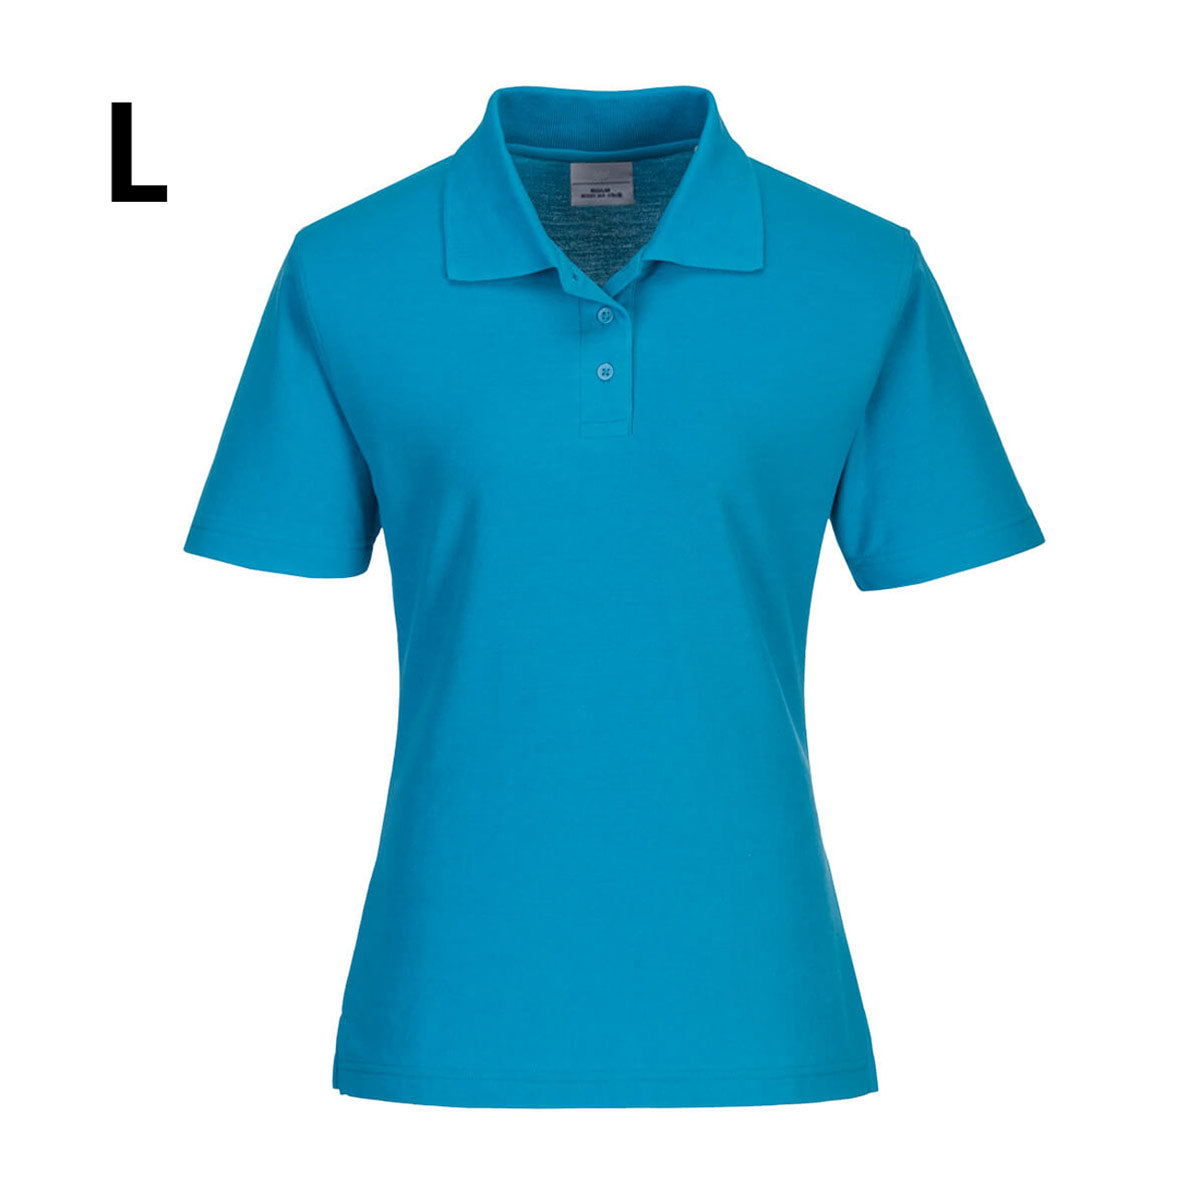 Poloshirt til damer - Vand blå - Størrelse: L